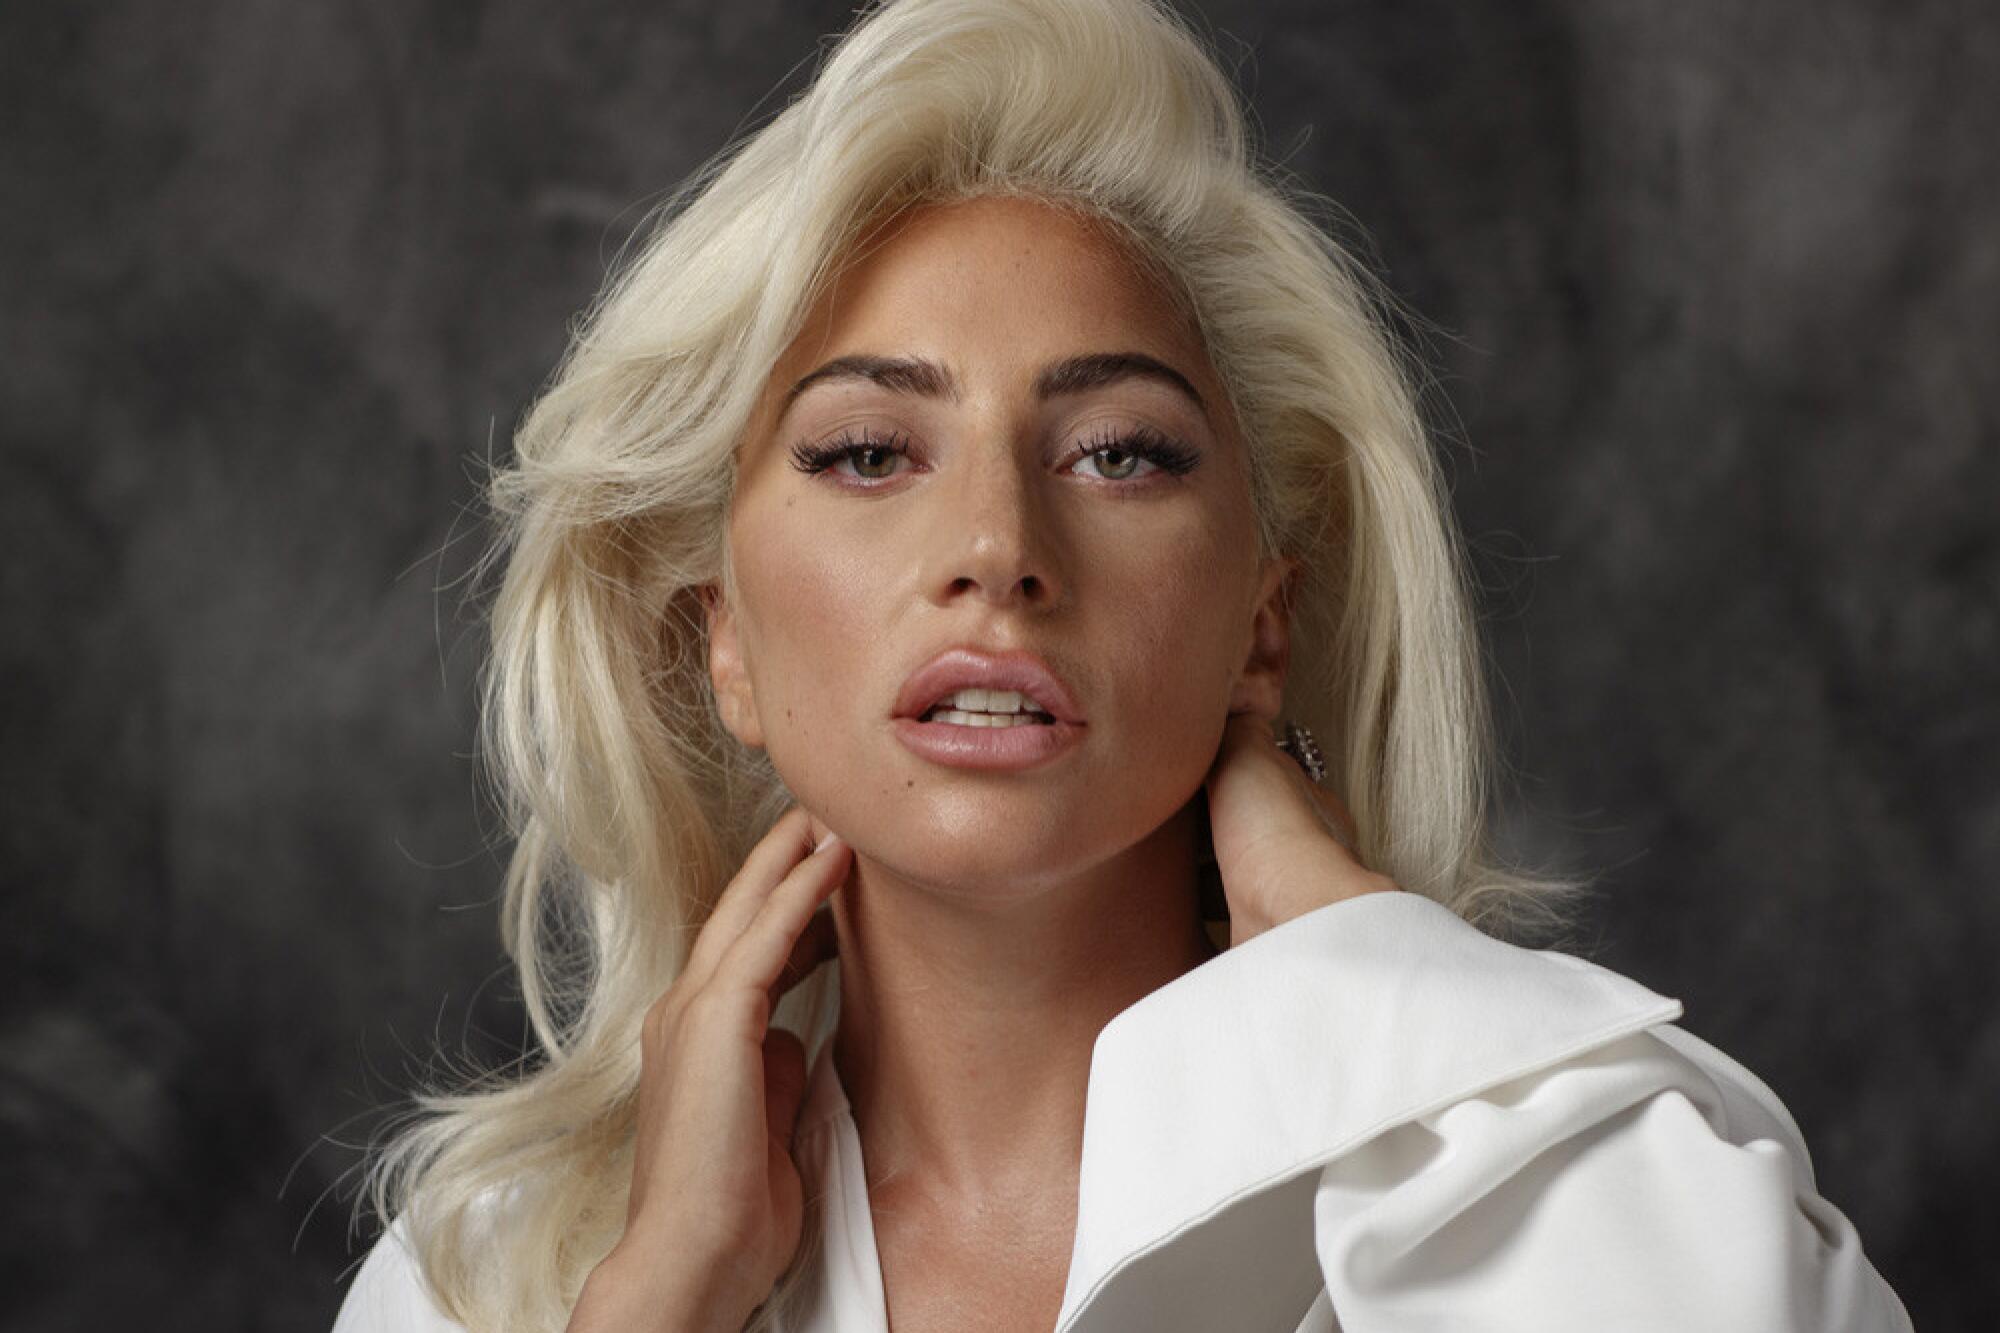 Lady Gaga cuando poso en Malibúpara Los Angeles Times cuando promocionaba"A Star is Born".